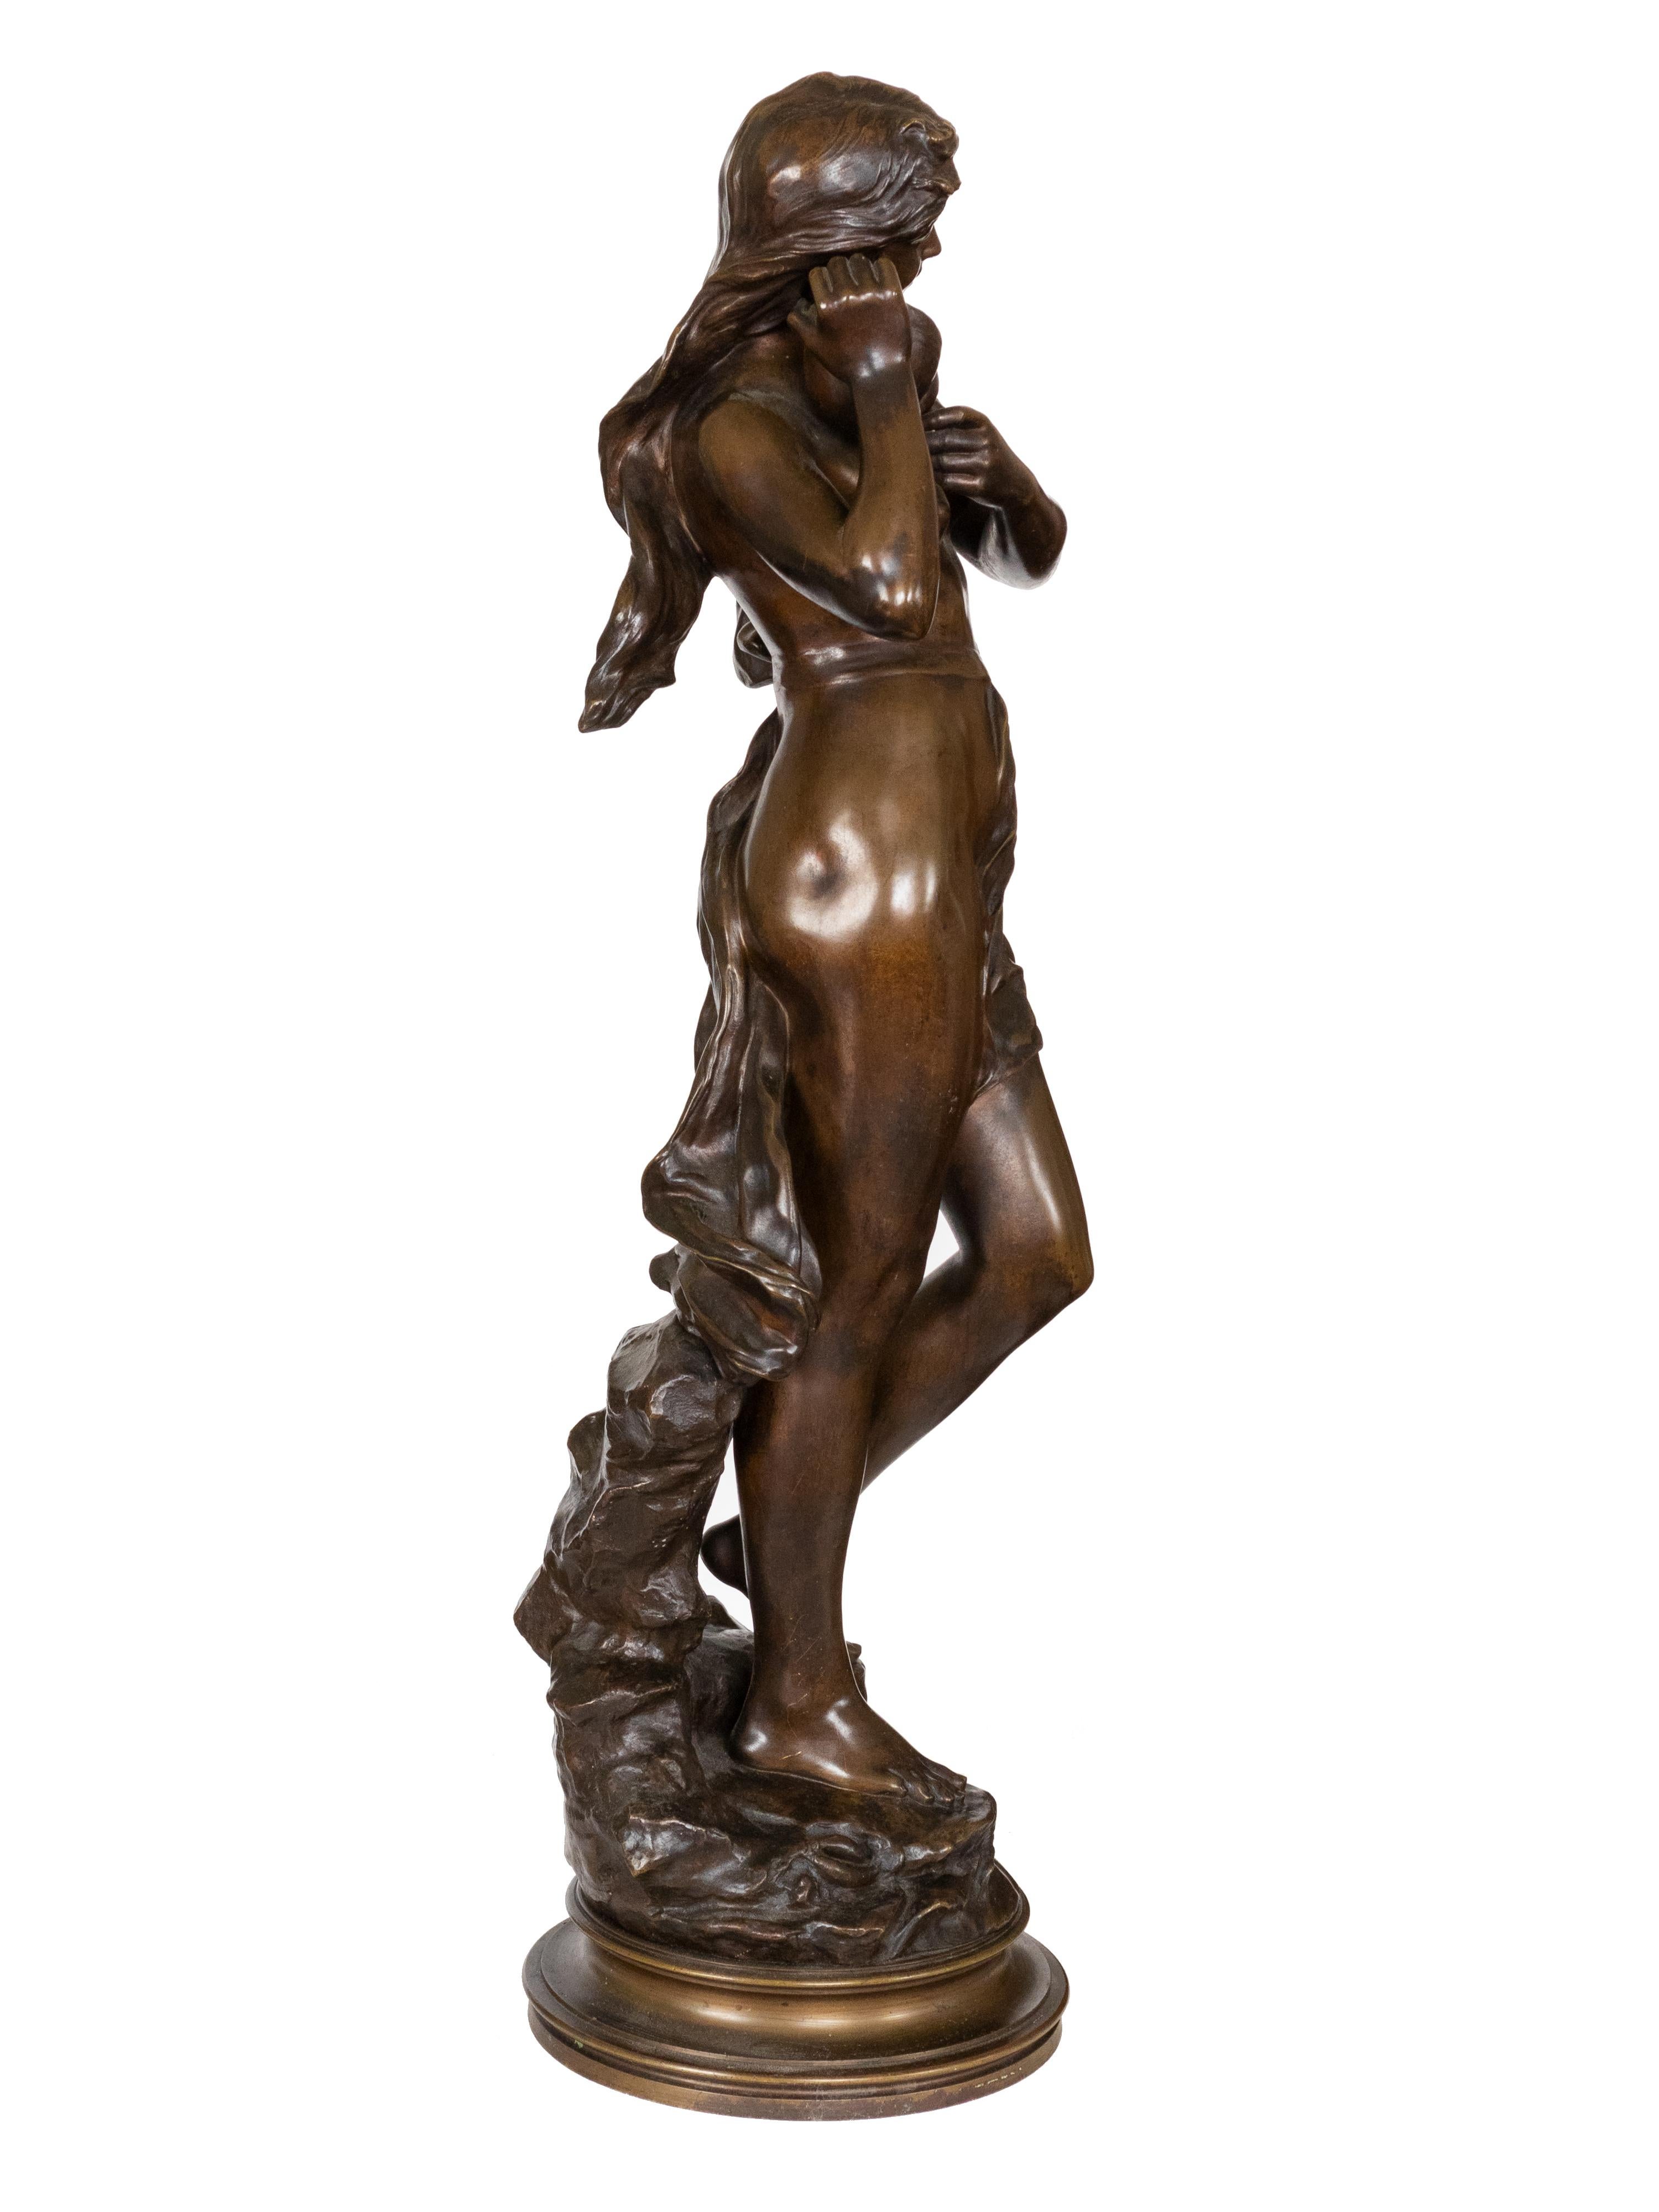 Eurydike, eine der Nereiden, wird in einer Bronzestatue aus dem 19. Jahrhundert dargestellt. Ihr langes Haar fließt frei inmitten einer felsigen Landschaft und sie trägt eine Muschel als Ohrring. Die Skulptur trägt die Signatur 